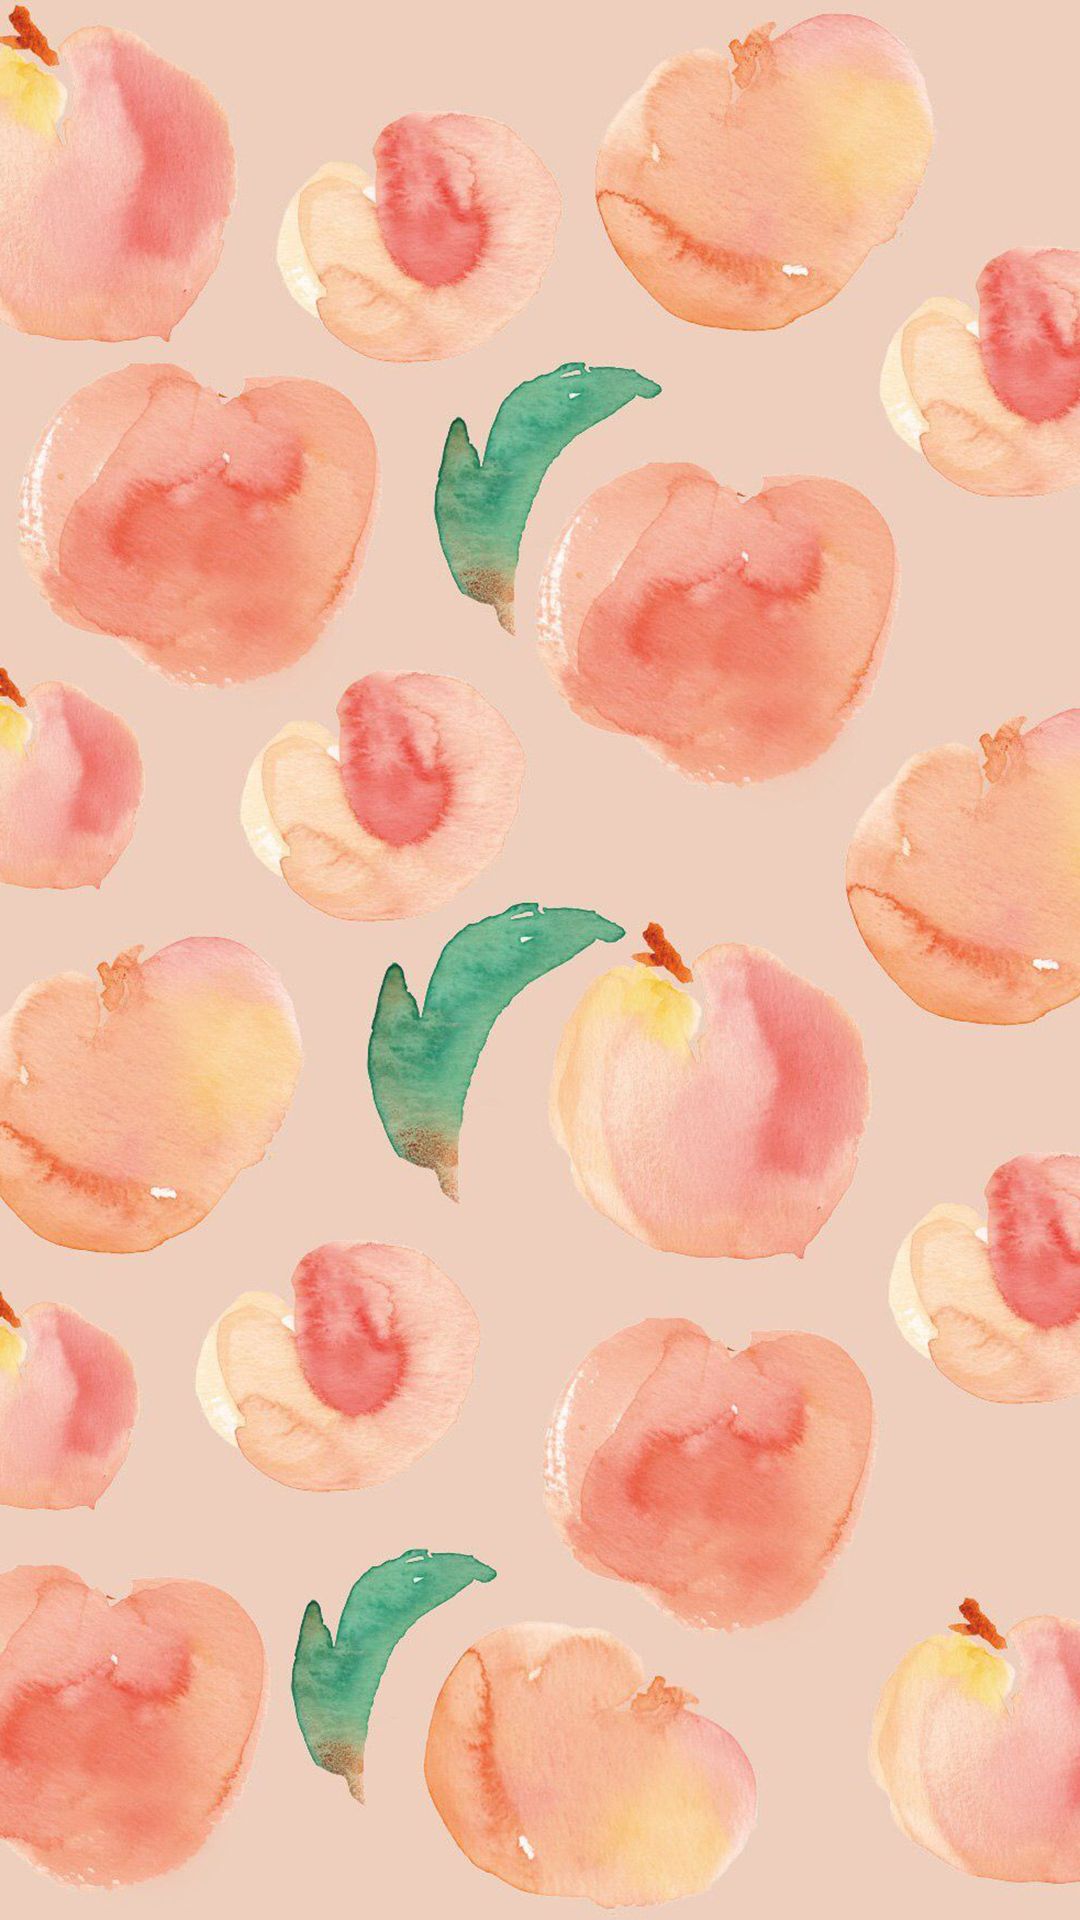 IPhone wallpaper watercolor peachs - Fruit